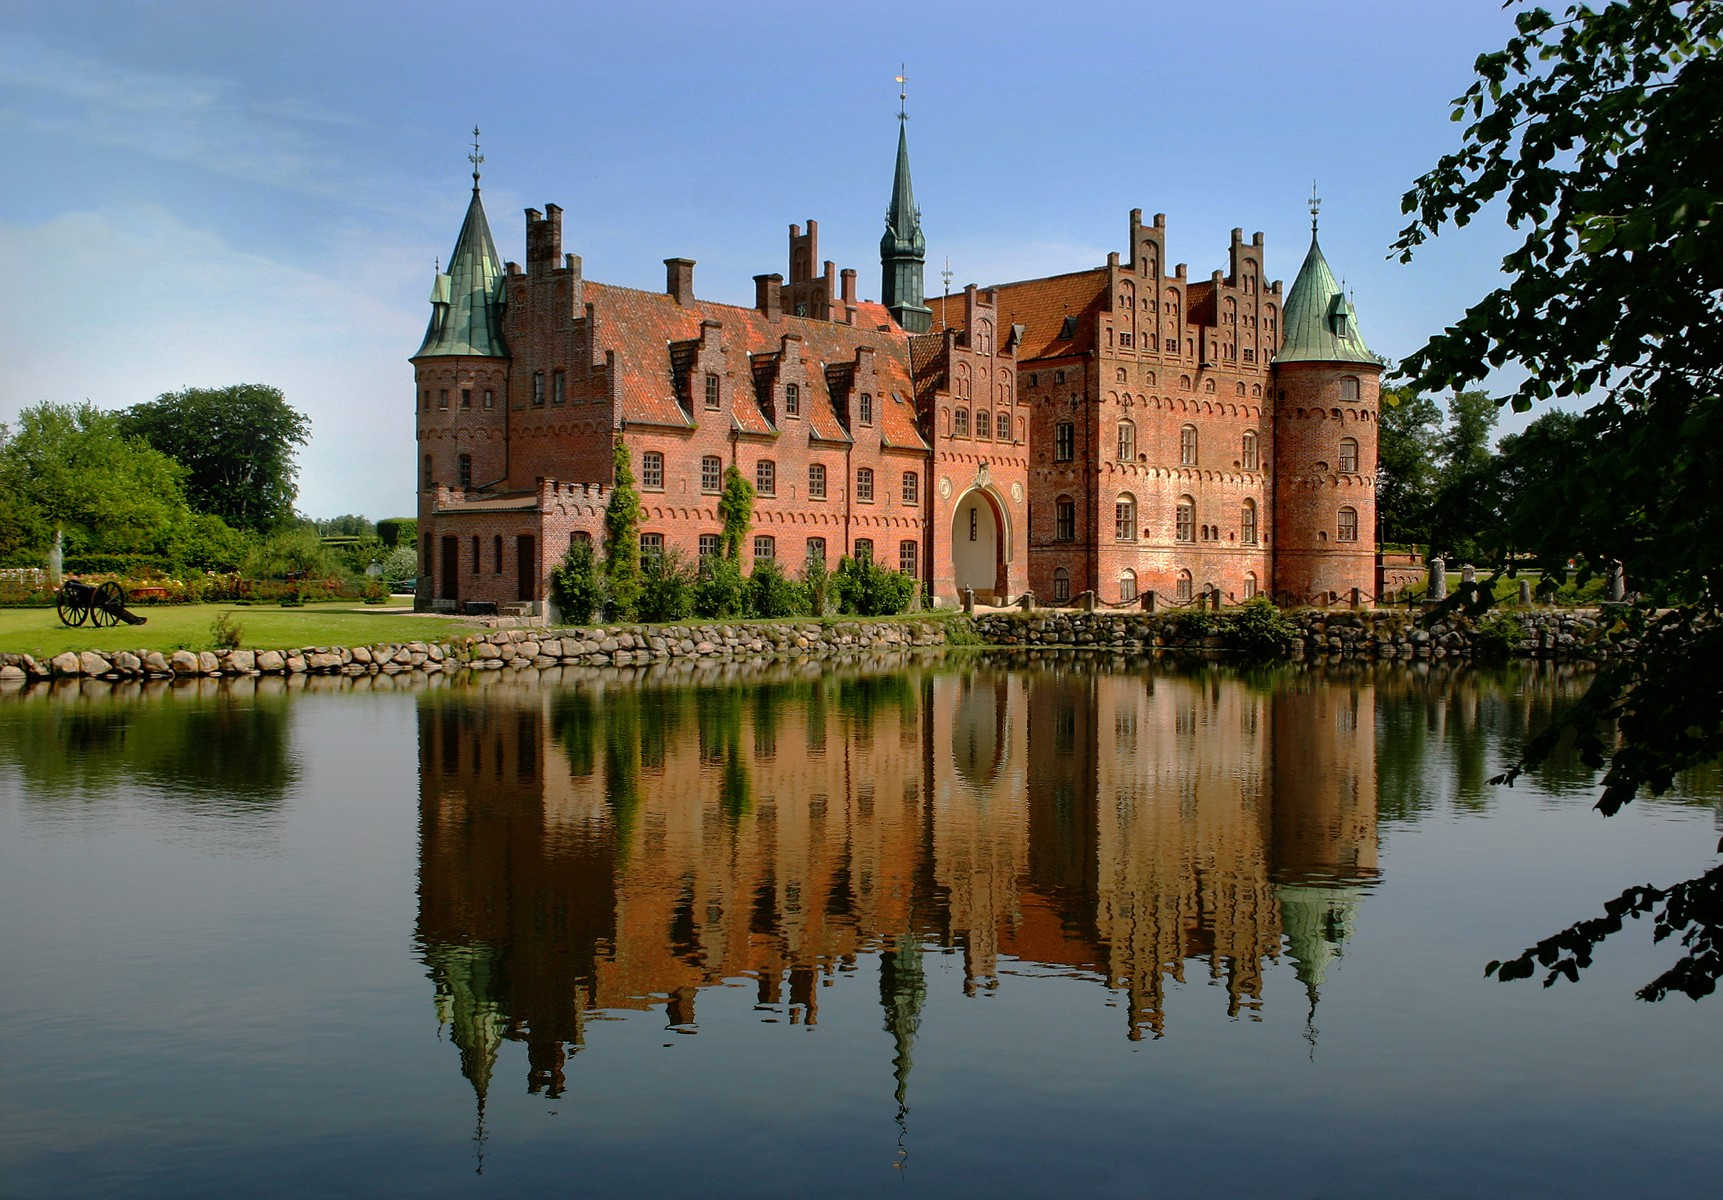 Egeskov Castle, Island of Funen, Denmark